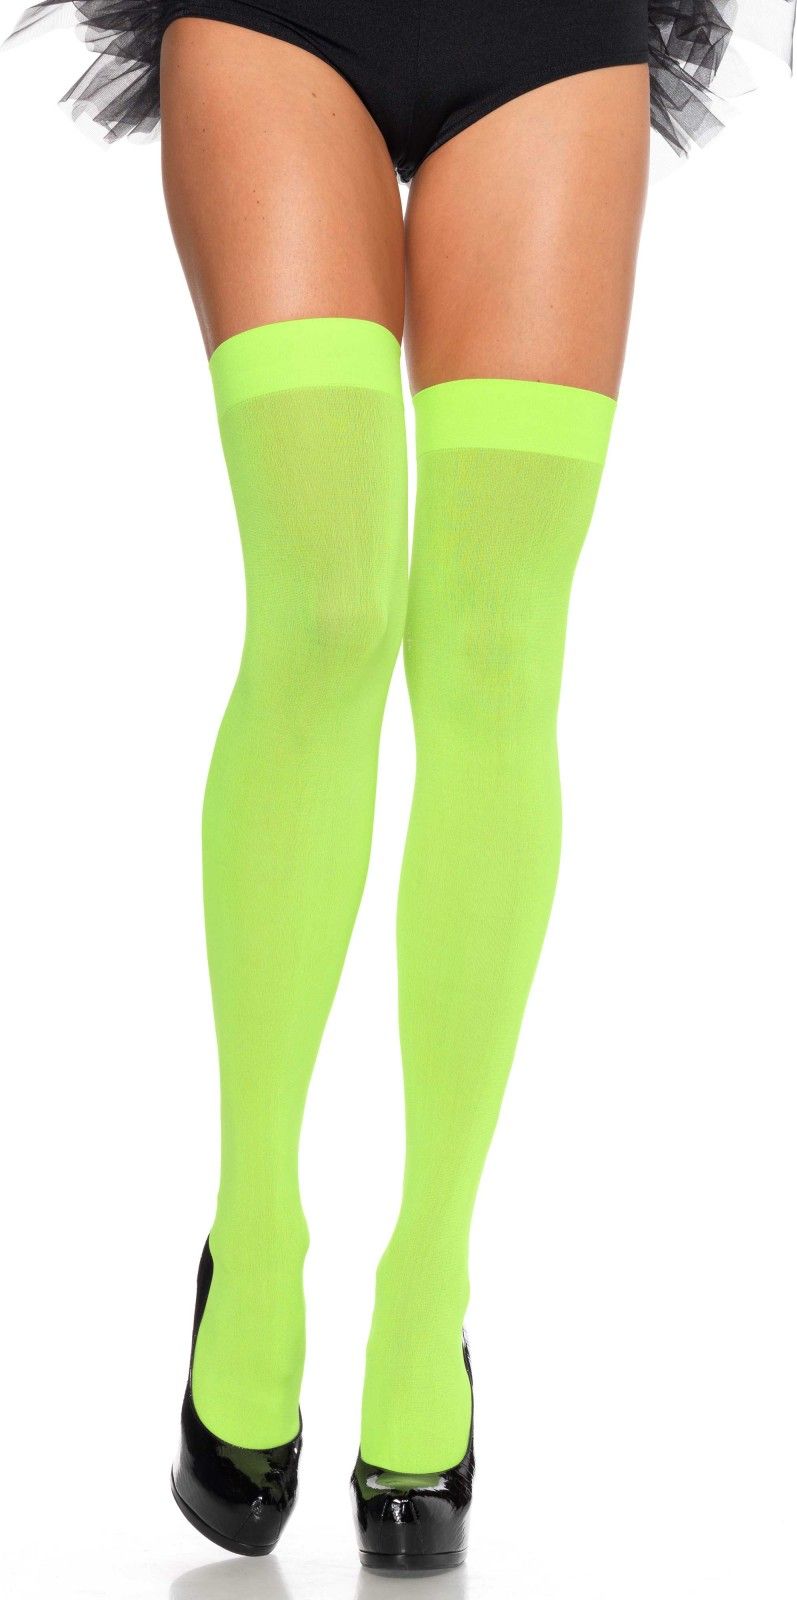 Neon groen nylon kousen